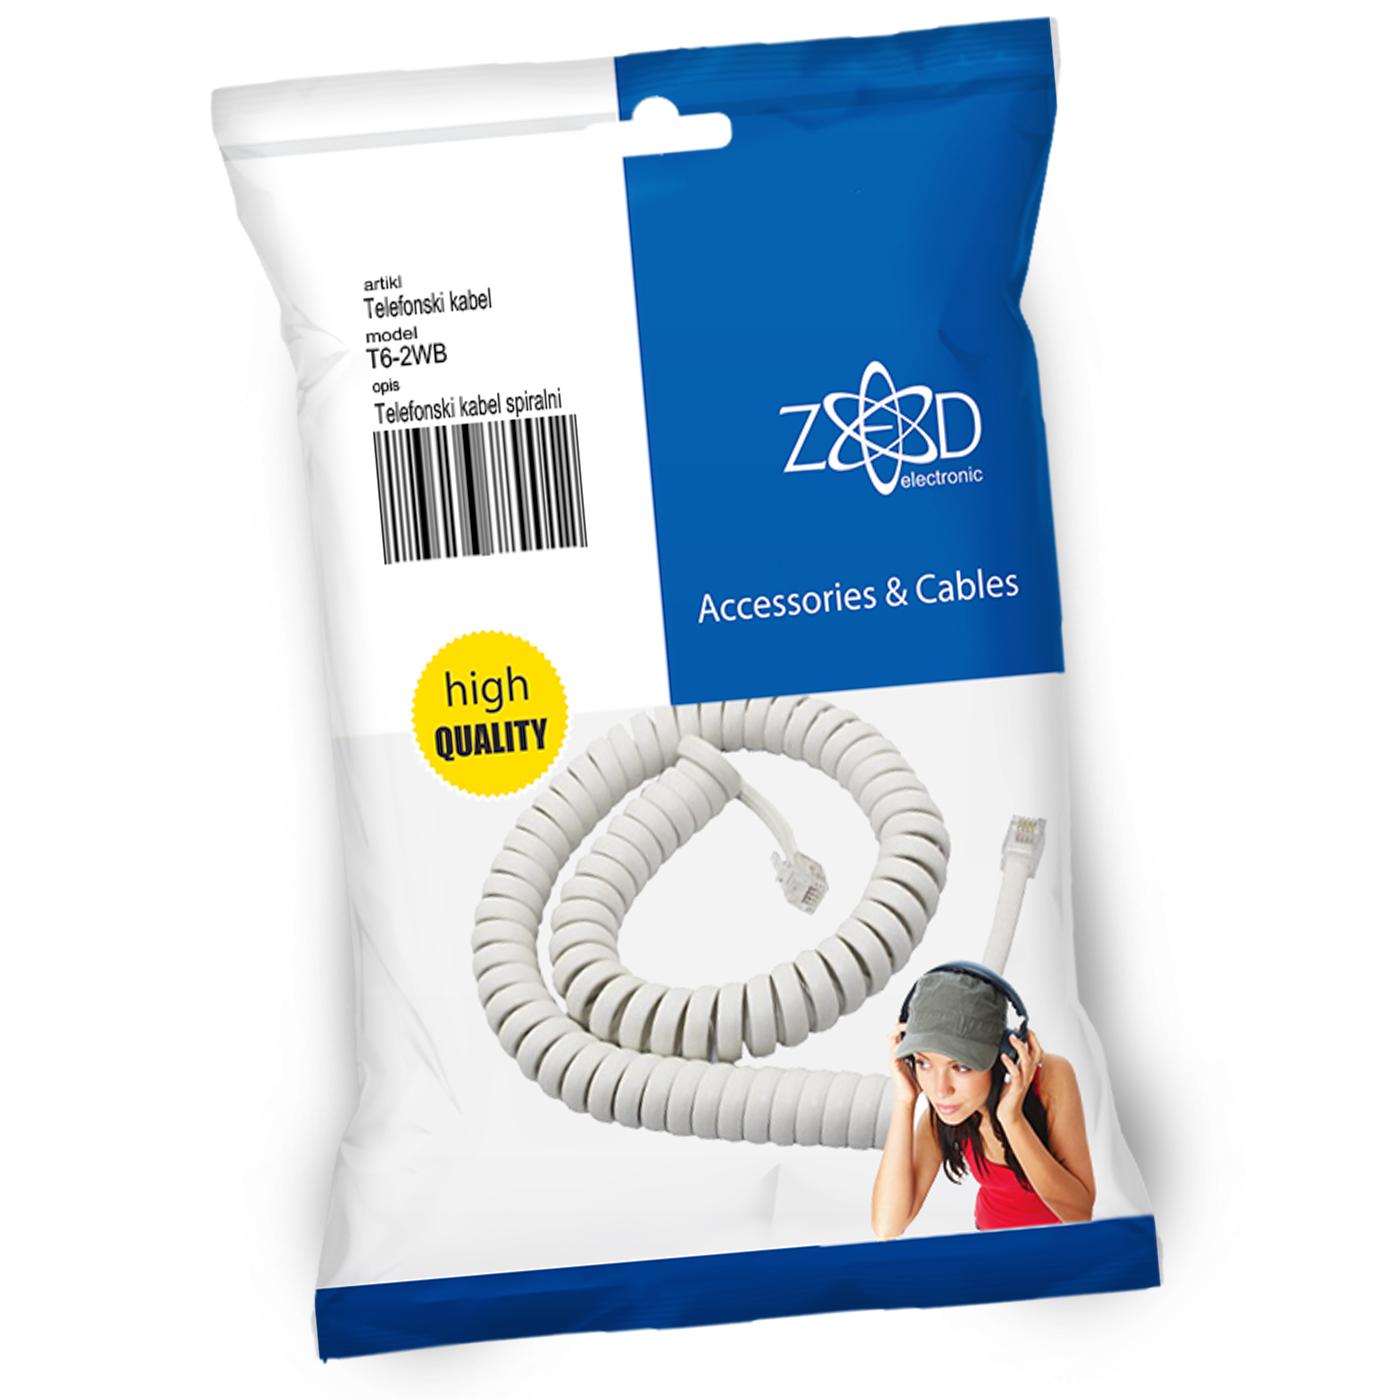 Telefonski kabl spiralni za slušalicu,dužina 2 metra,bijeli